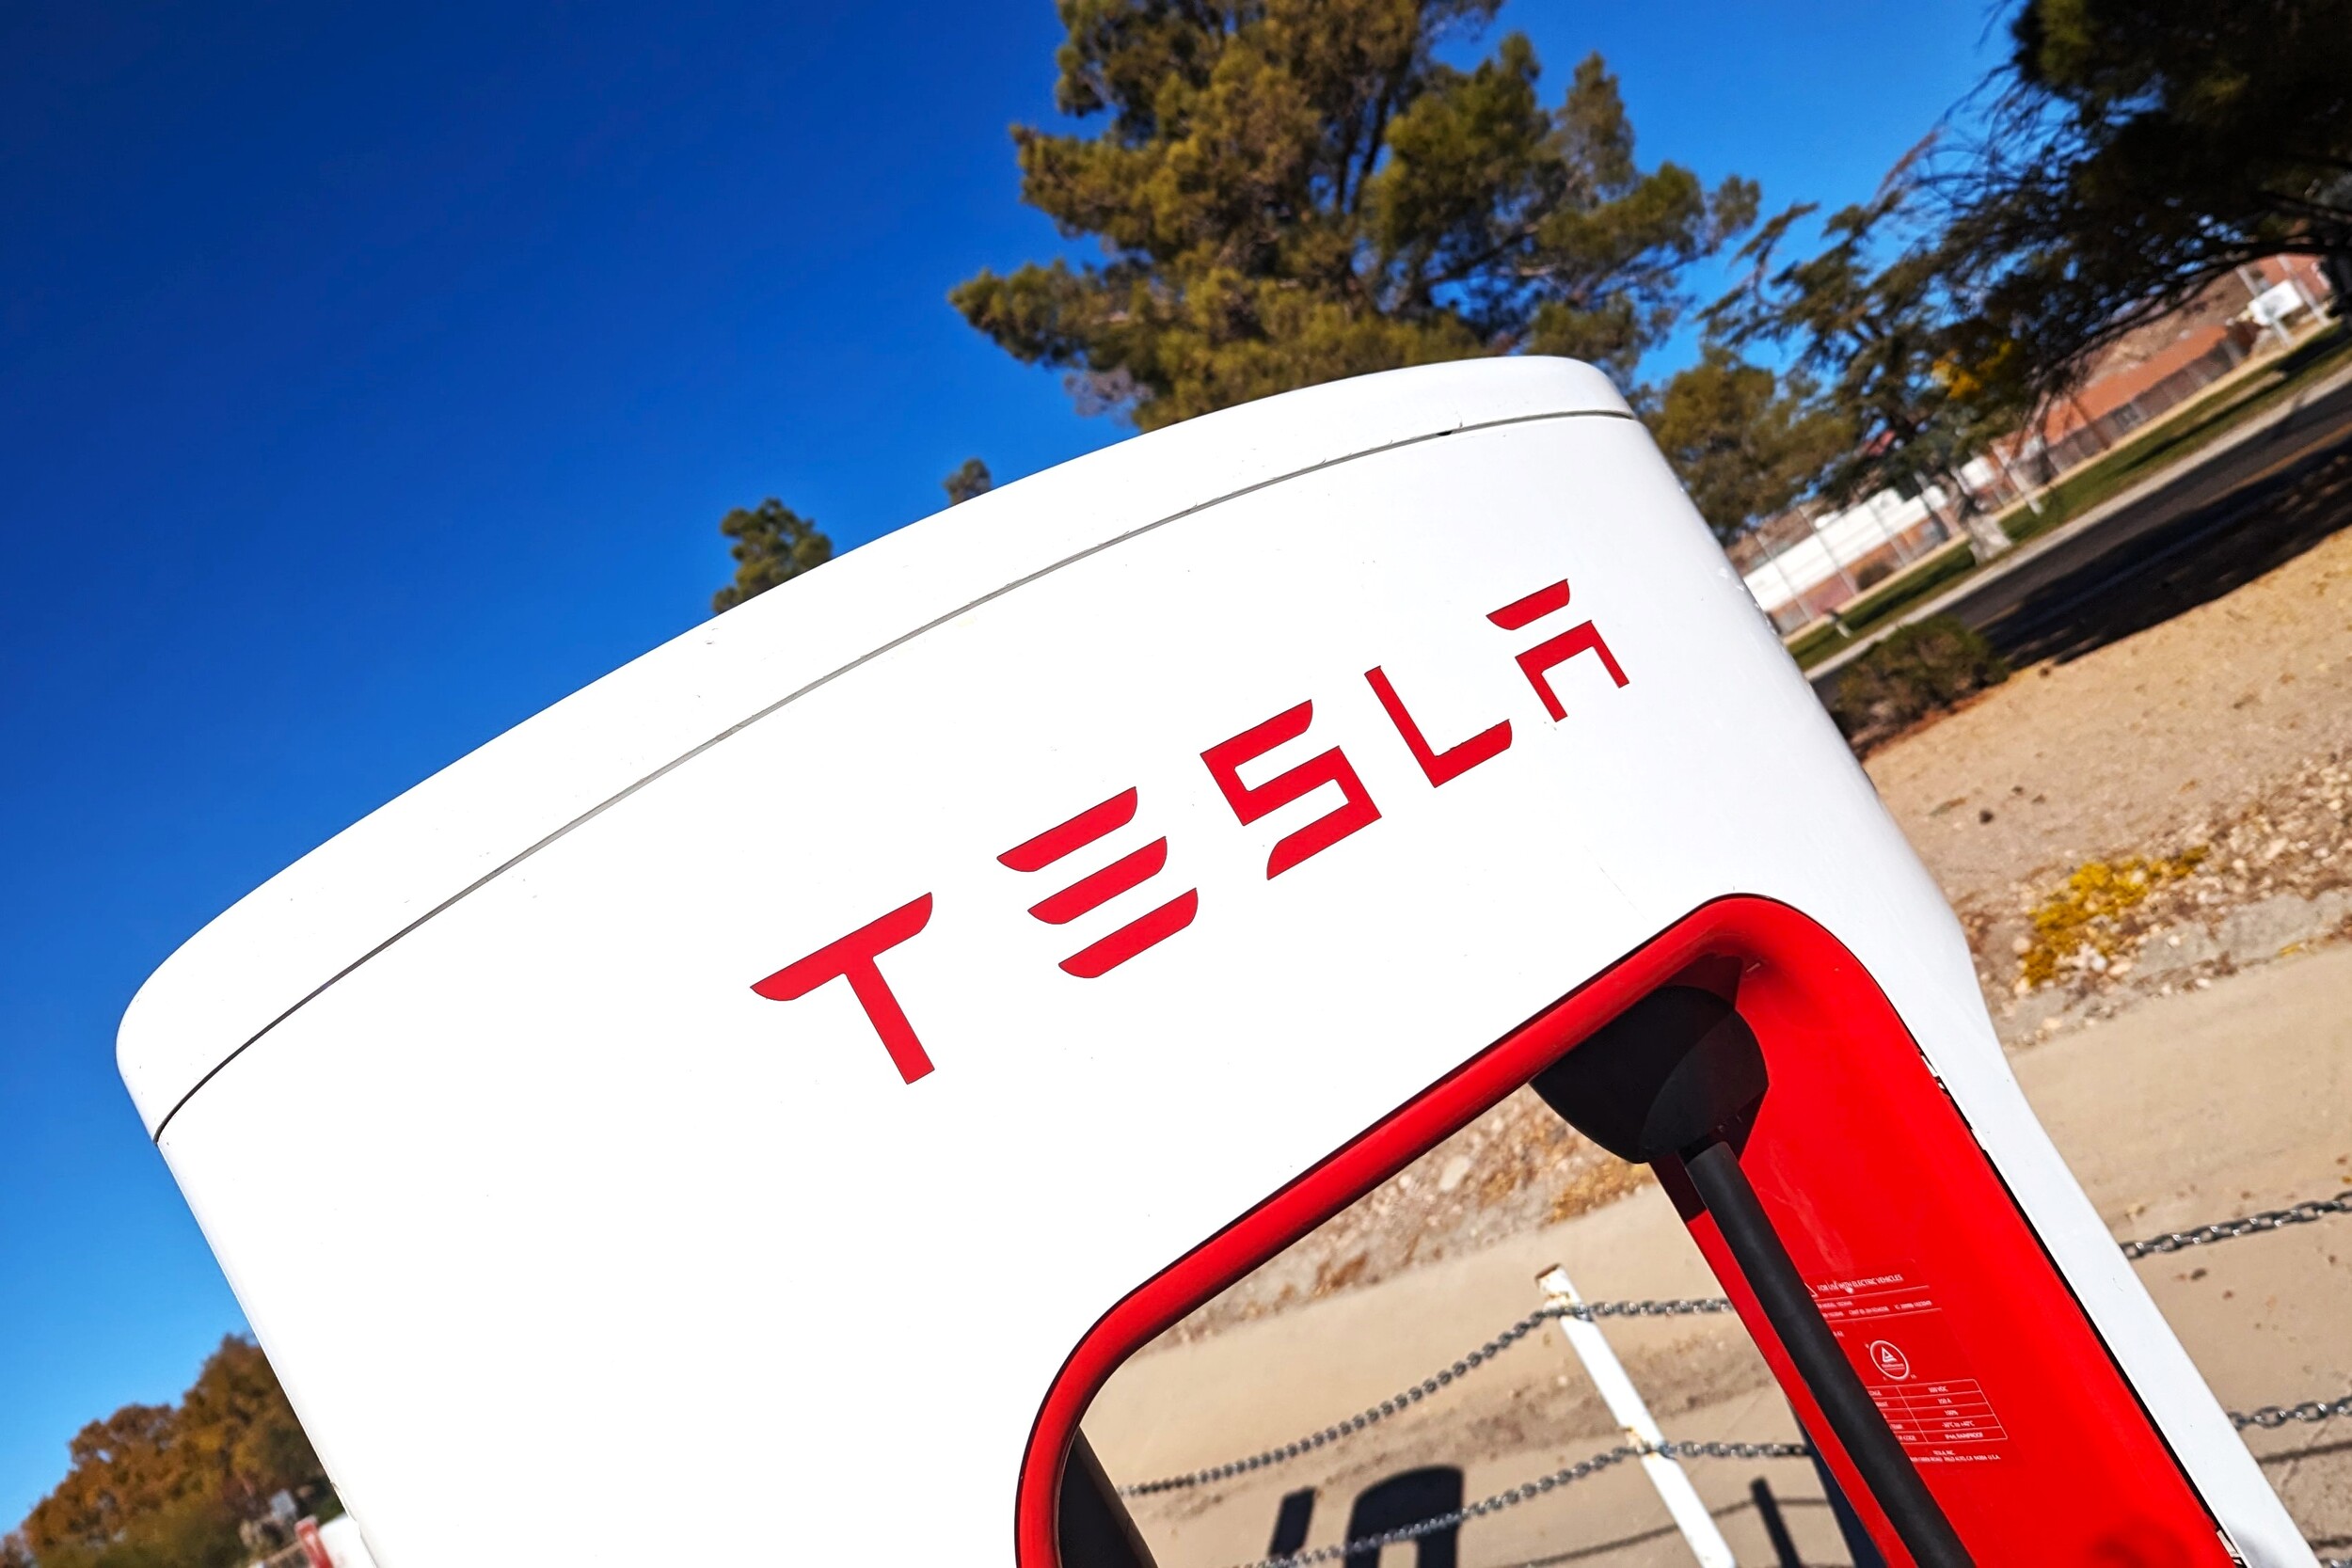 Tesla veut vite sortir un nouveau véhicule, baptisé Redwood, à seulement 23 000 euros : ce que l'on sait